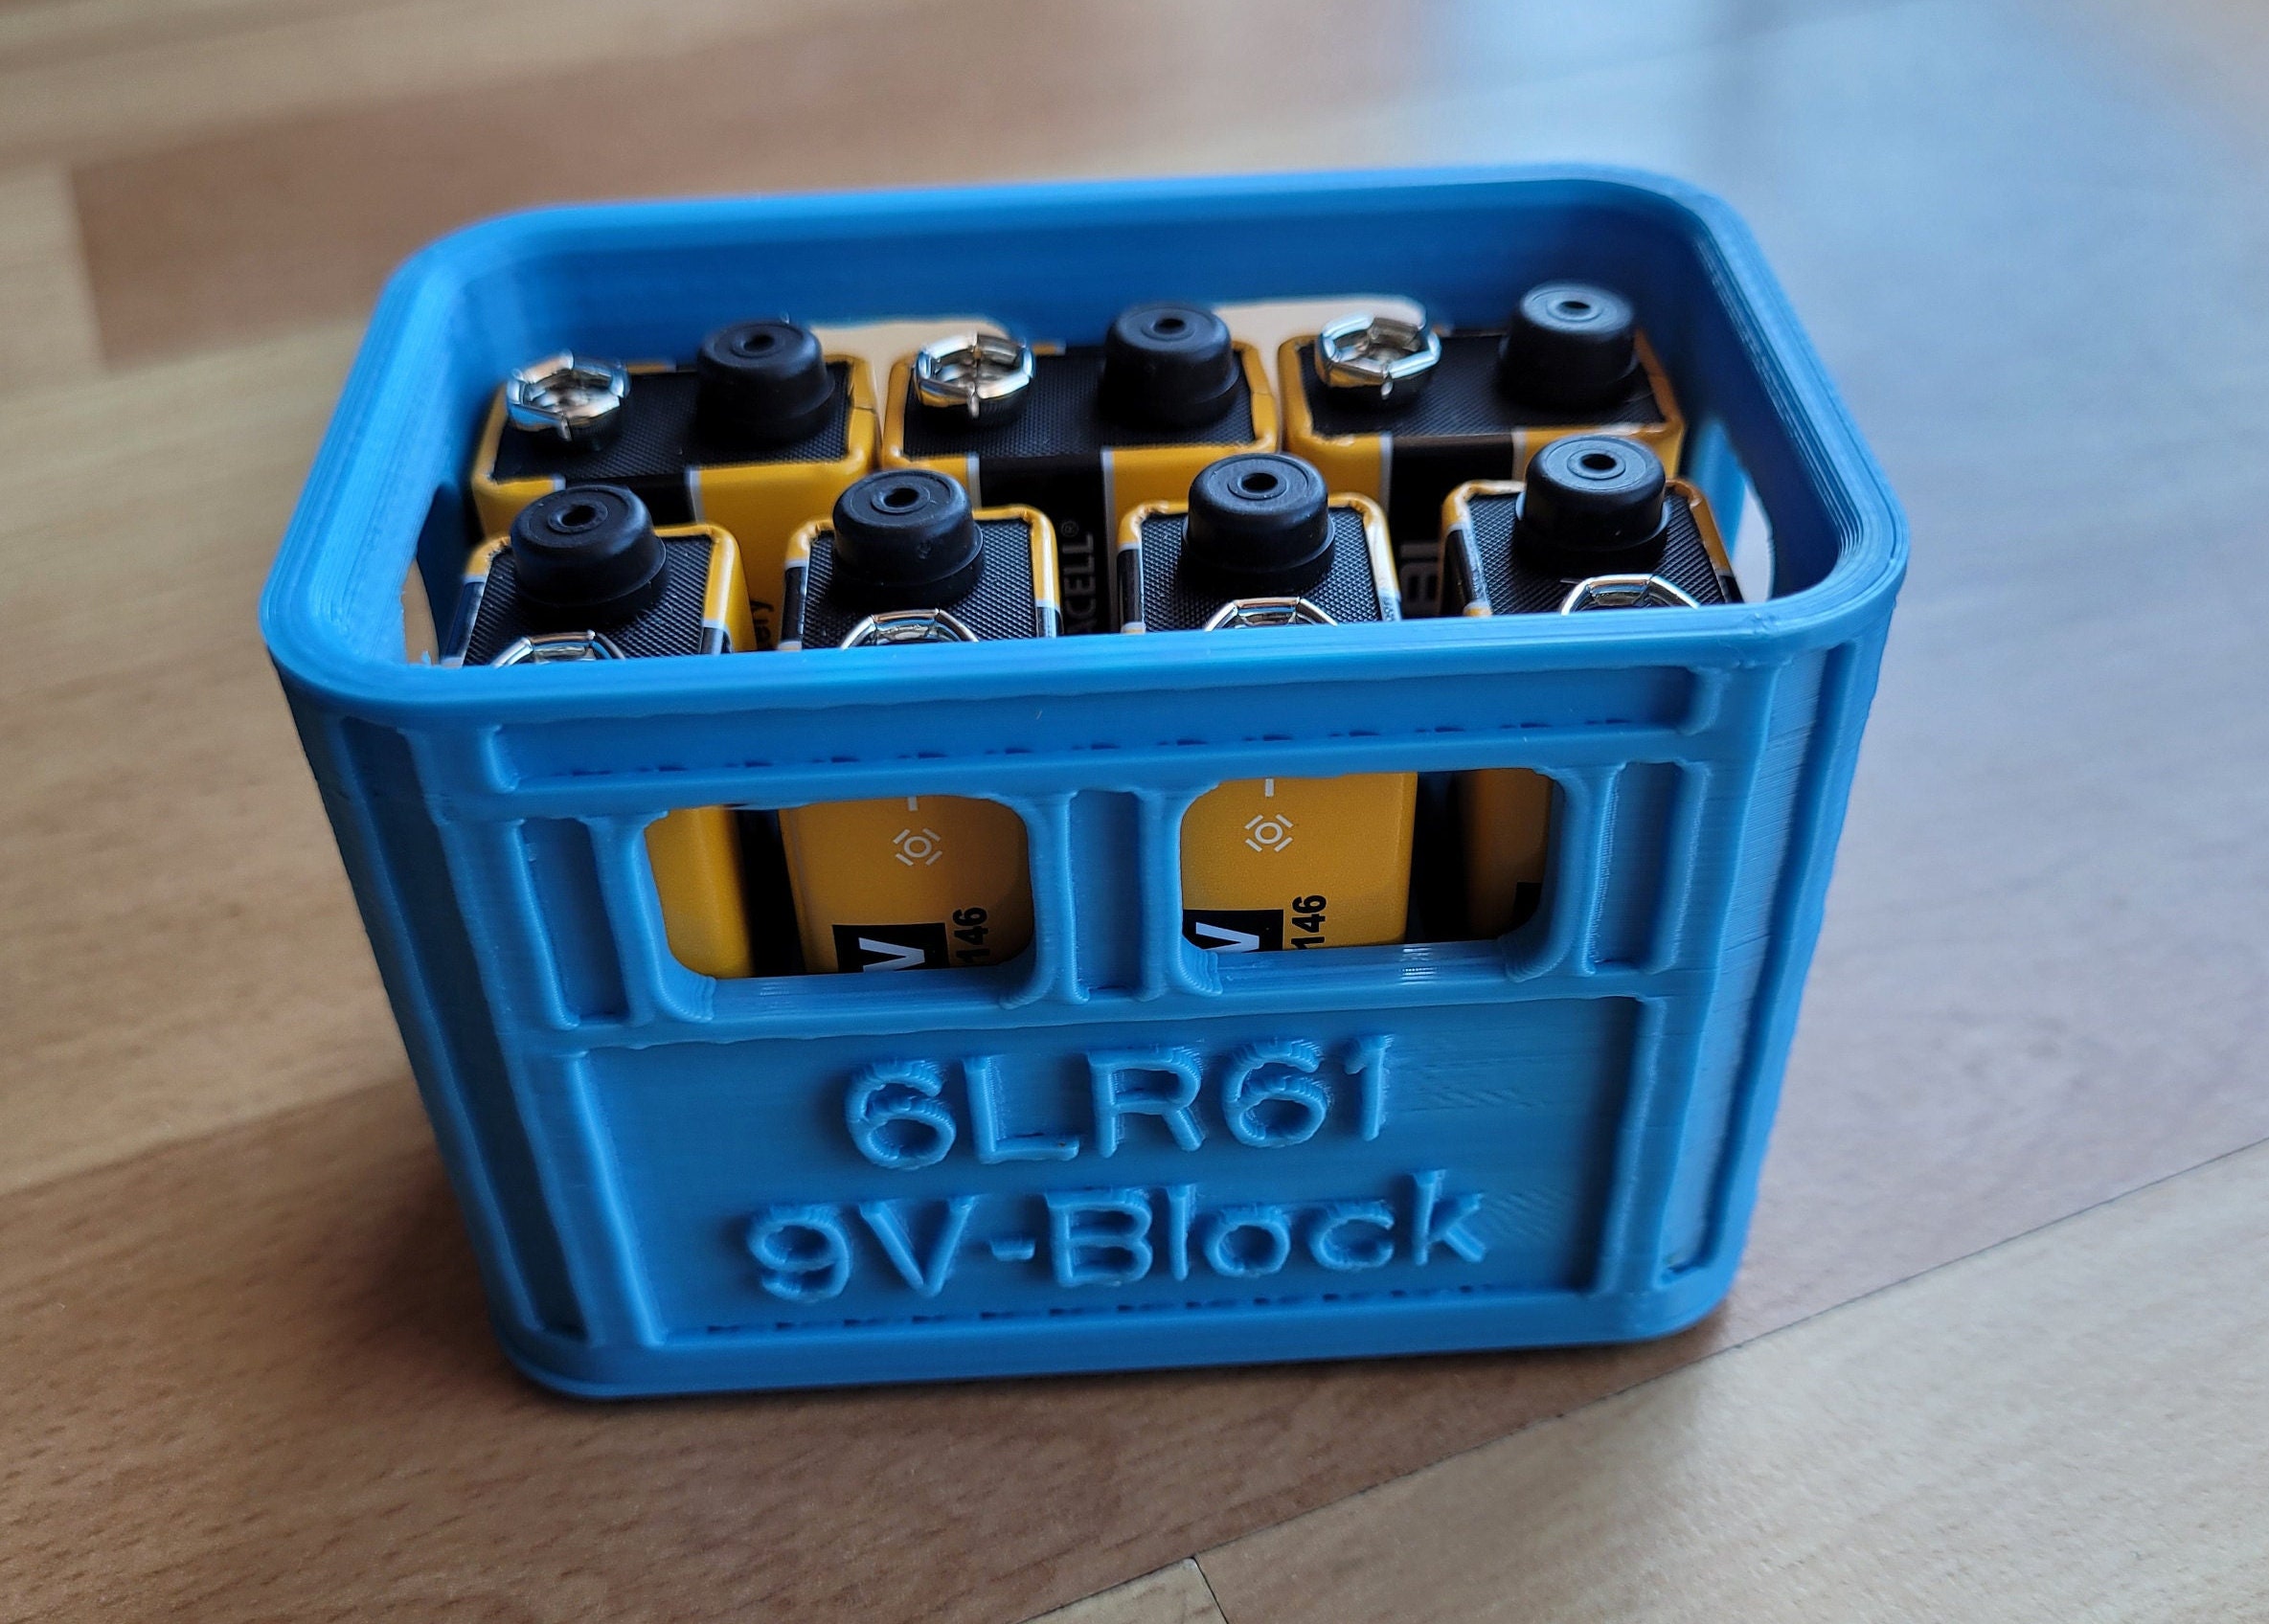 Batterie-Clip für 9V Blockbatterie T-Form